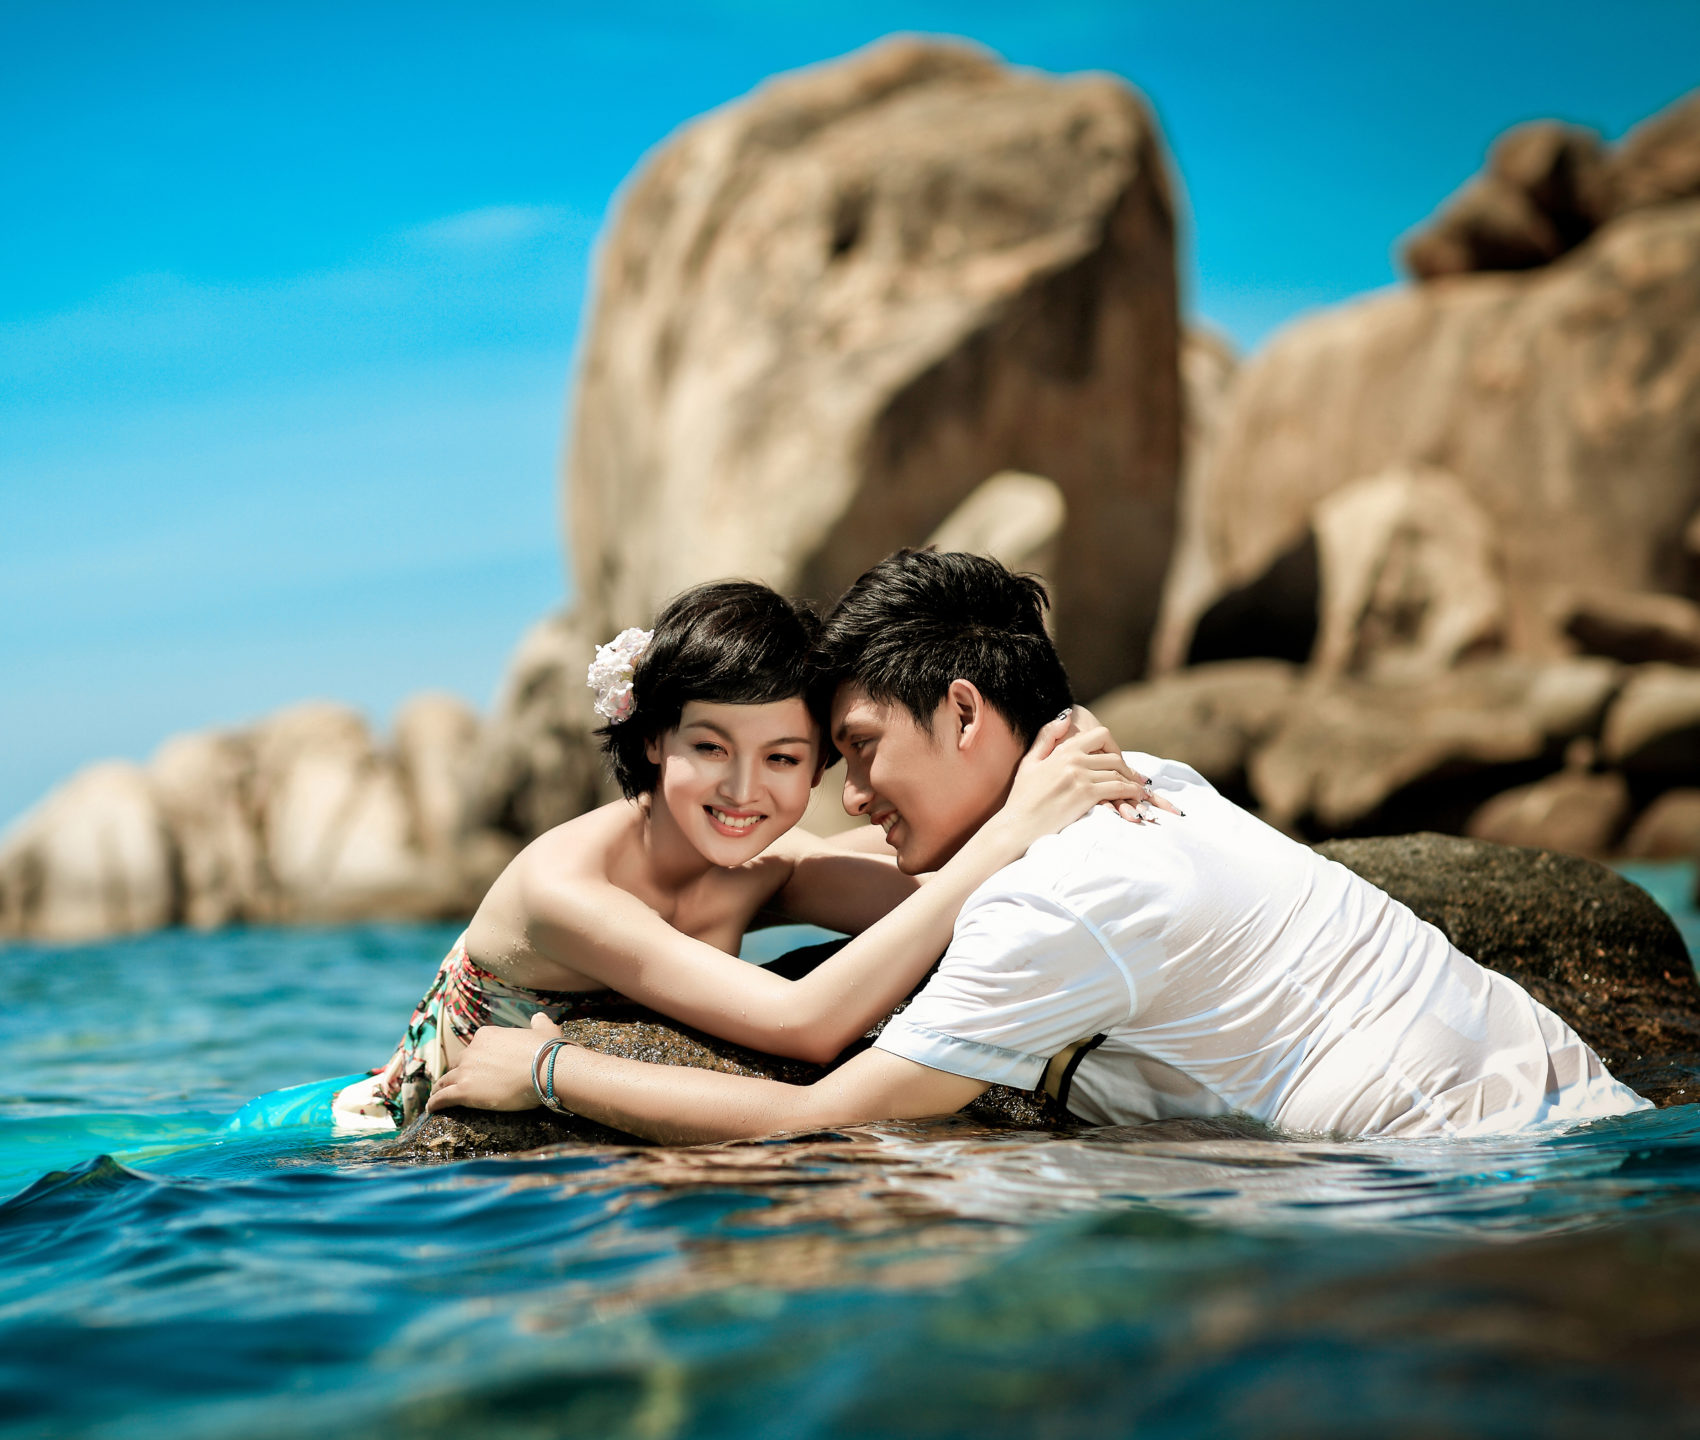 Discover 120+ poses for photography on beach super hot - kidsdream.edu.vn-nttc.com.vn